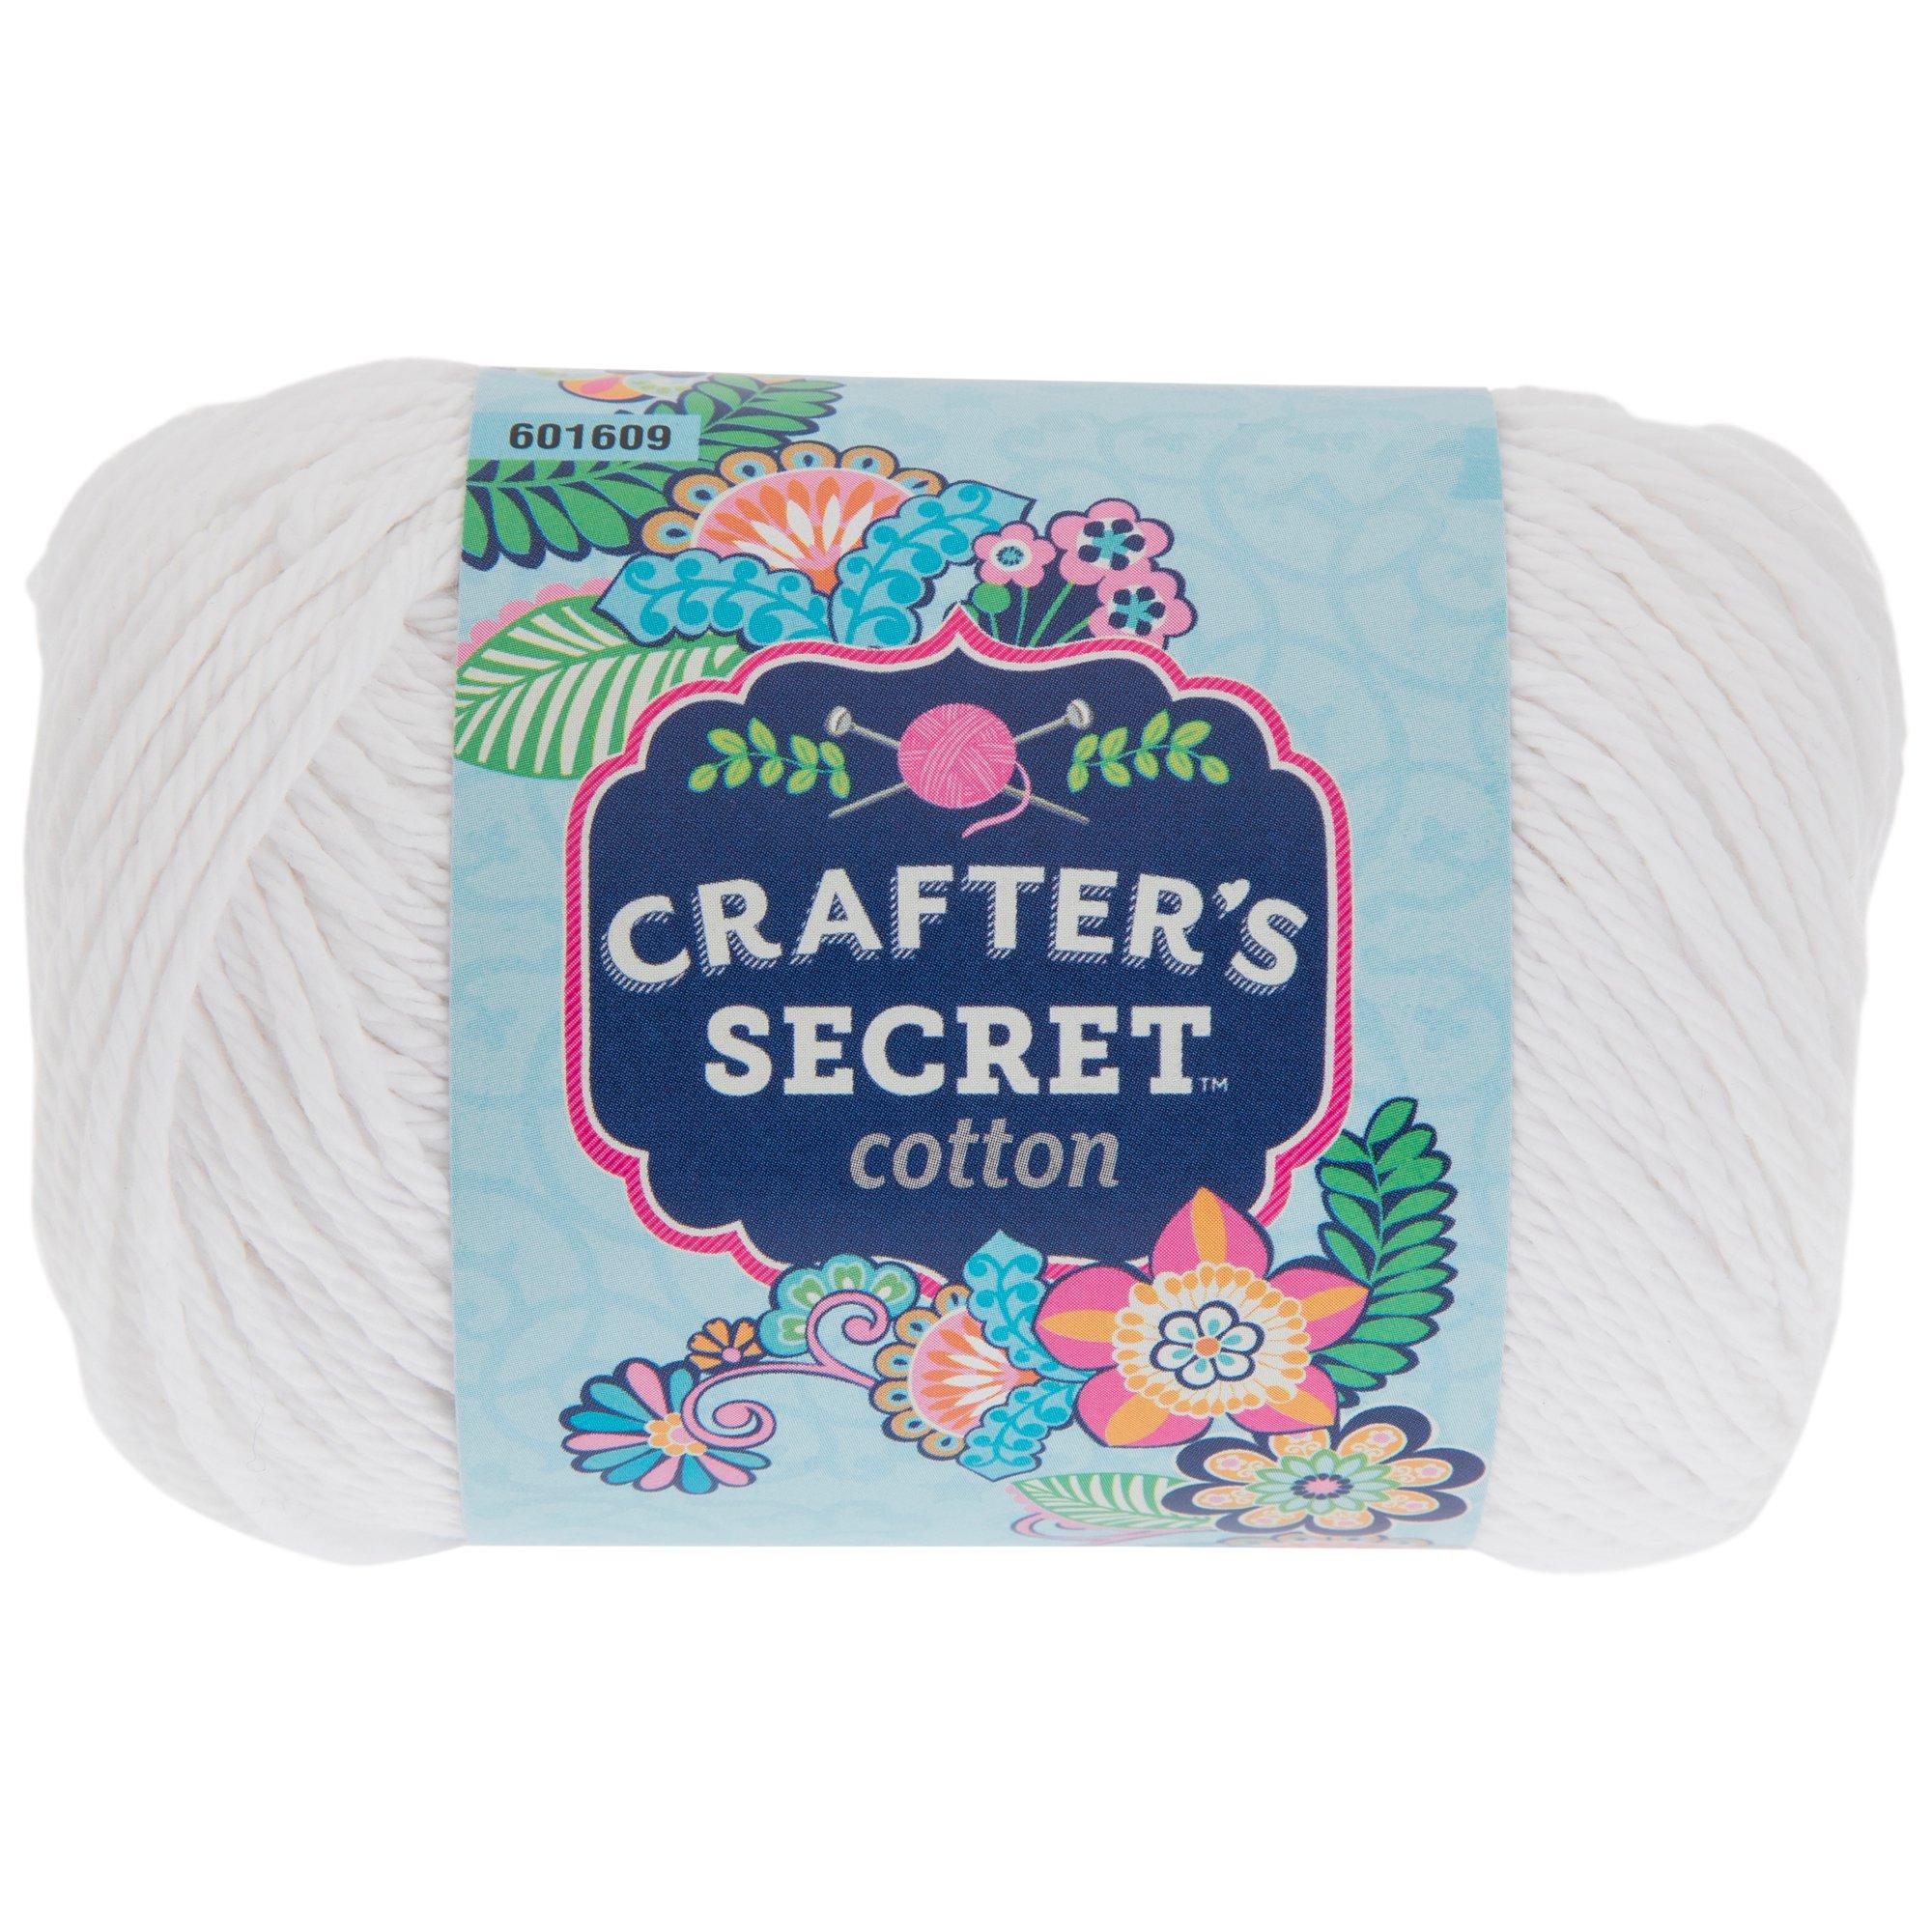 SOFT ECRU 2.5 Oz / 120 Yds Lily Sugar and Cream Cotton Yarn Skein Ivory  100% Cotton Yarn 